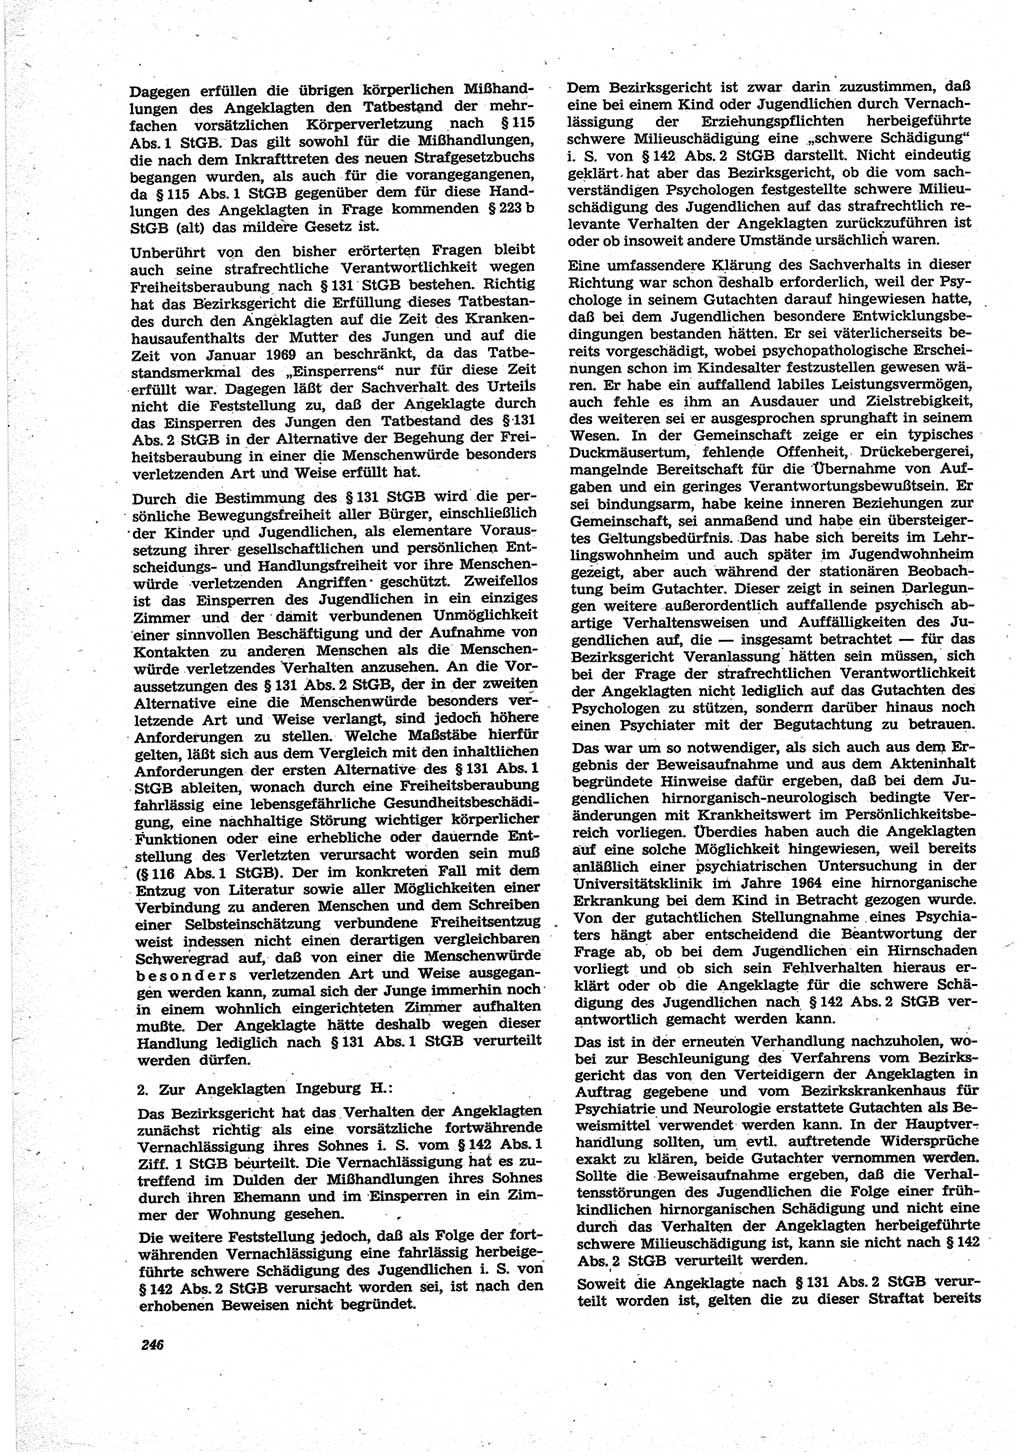 Neue Justiz (NJ), Zeitschrift für Recht und Rechtswissenschaft [Deutsche Demokratische Republik (DDR)], 25. Jahrgang 1971, Seite 246 (NJ DDR 1971, S. 246)